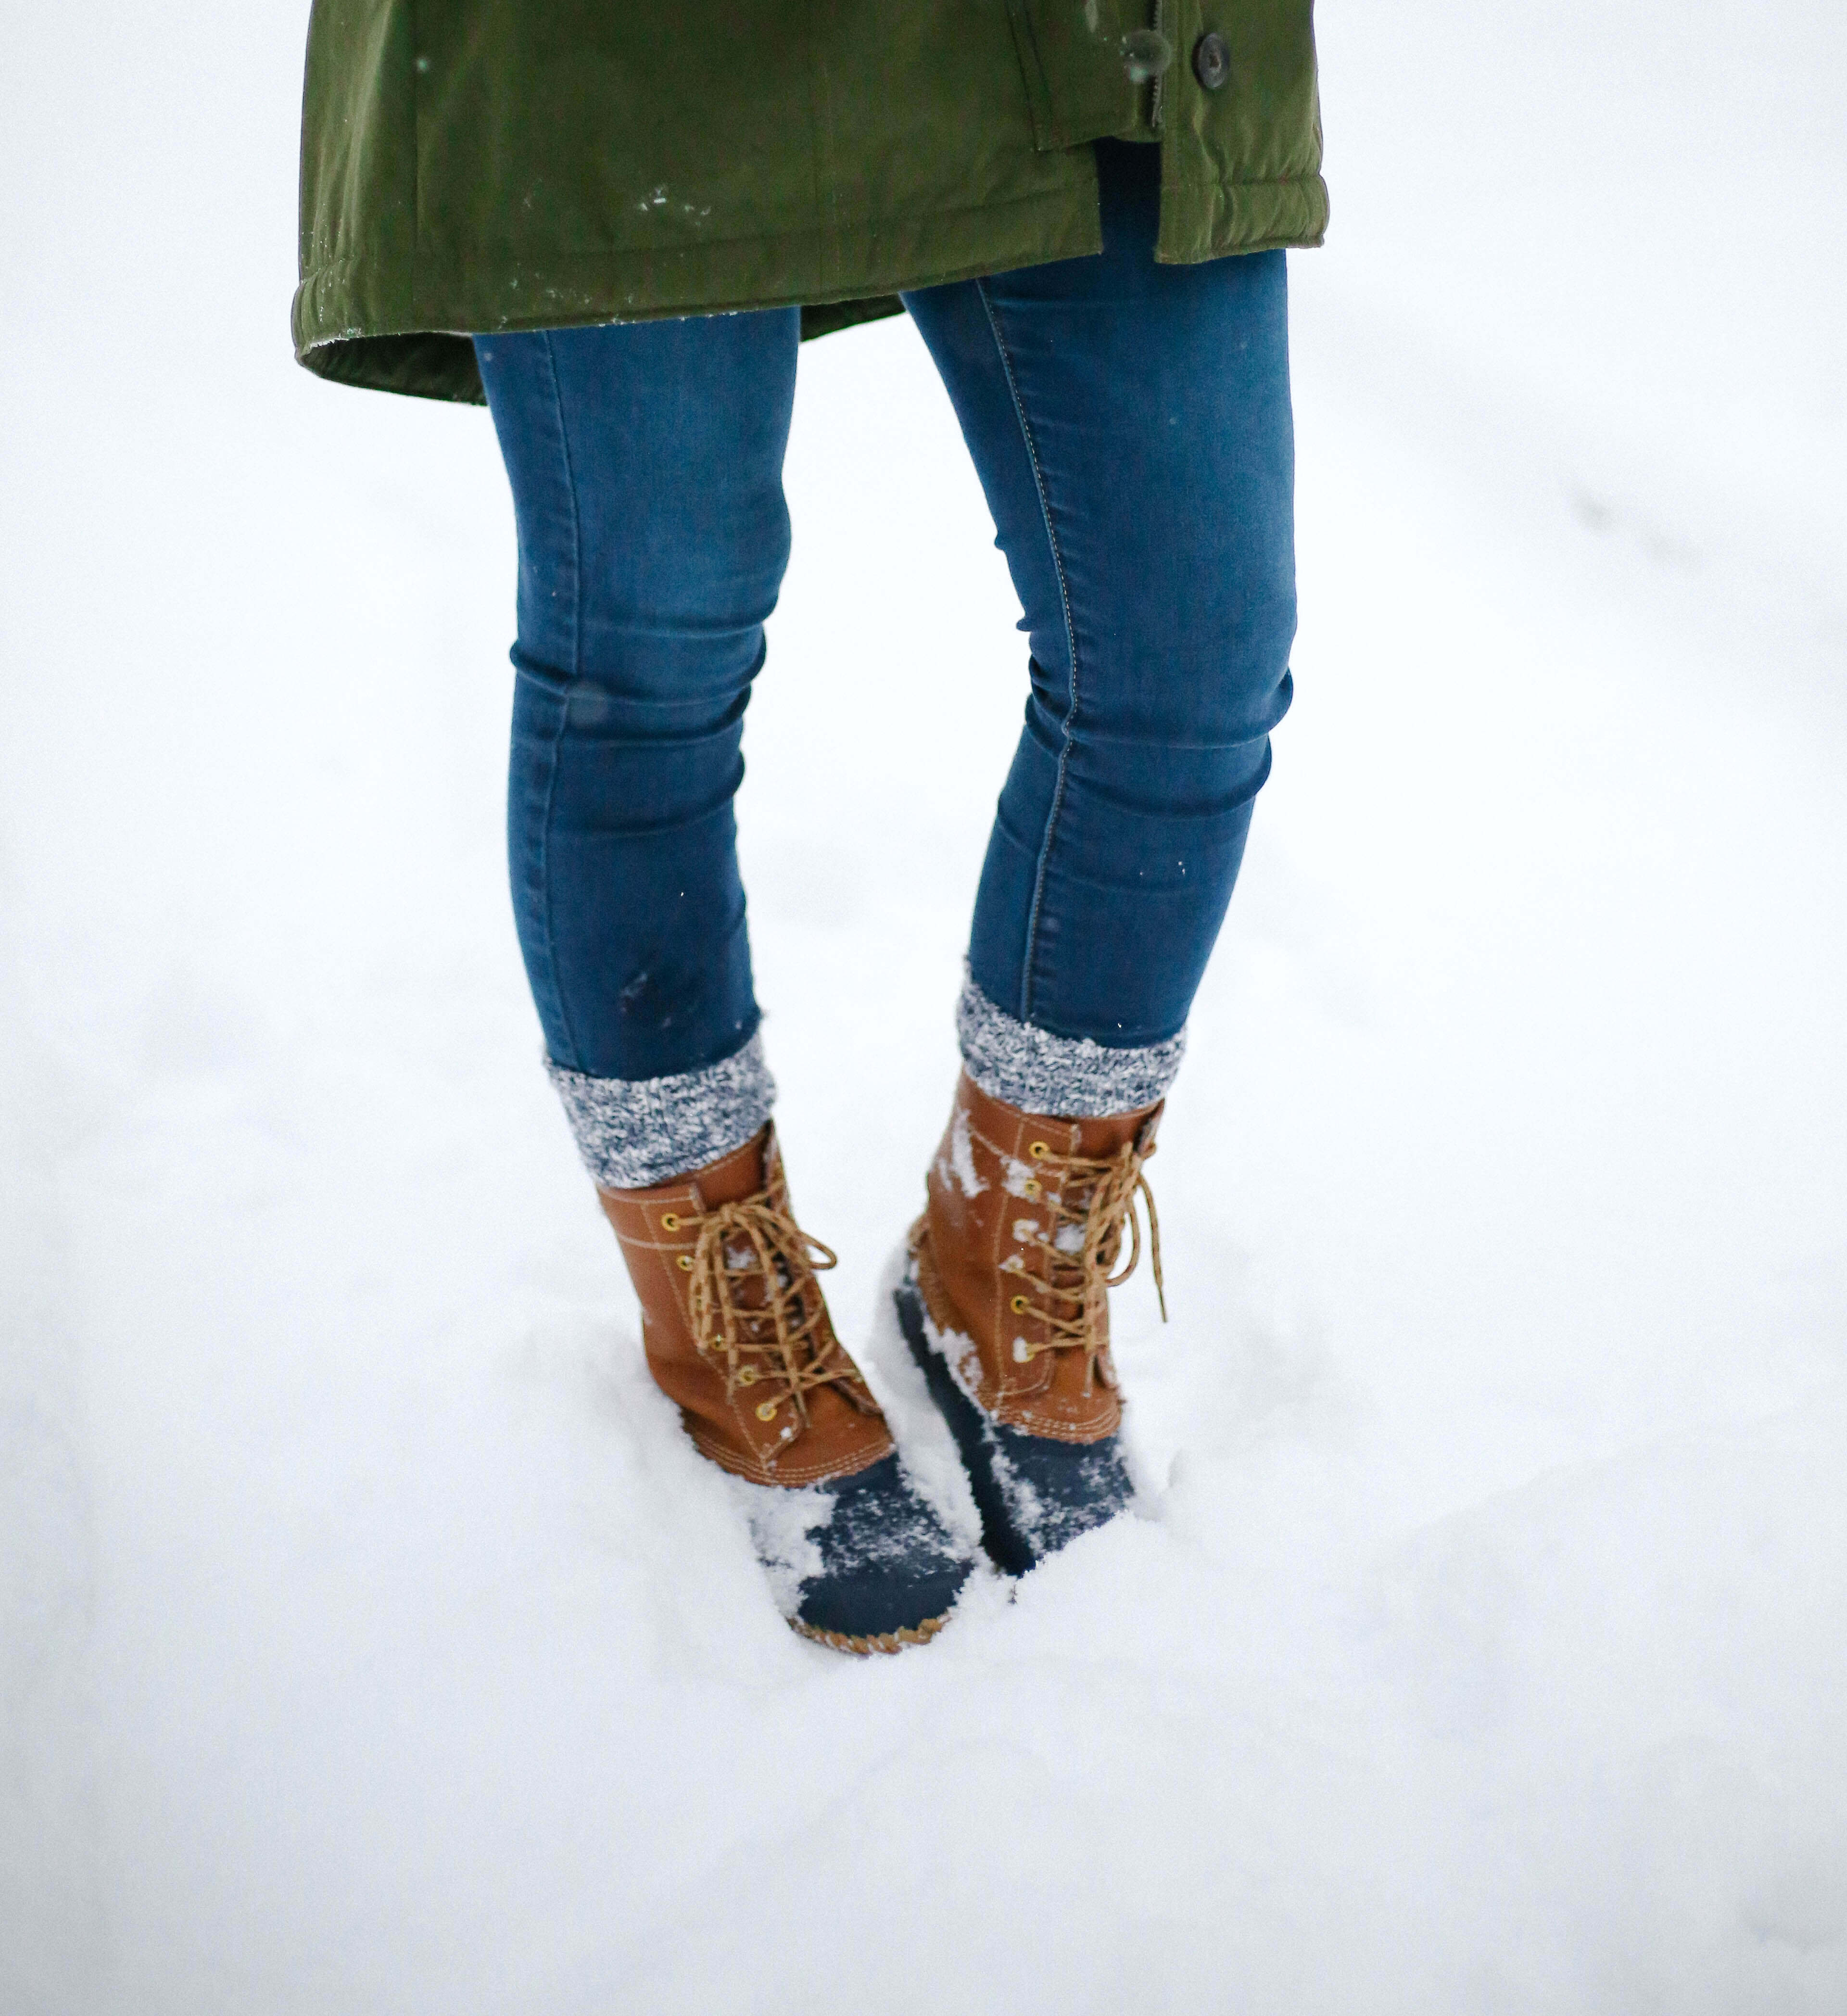 snow-day-parka-fashion-20